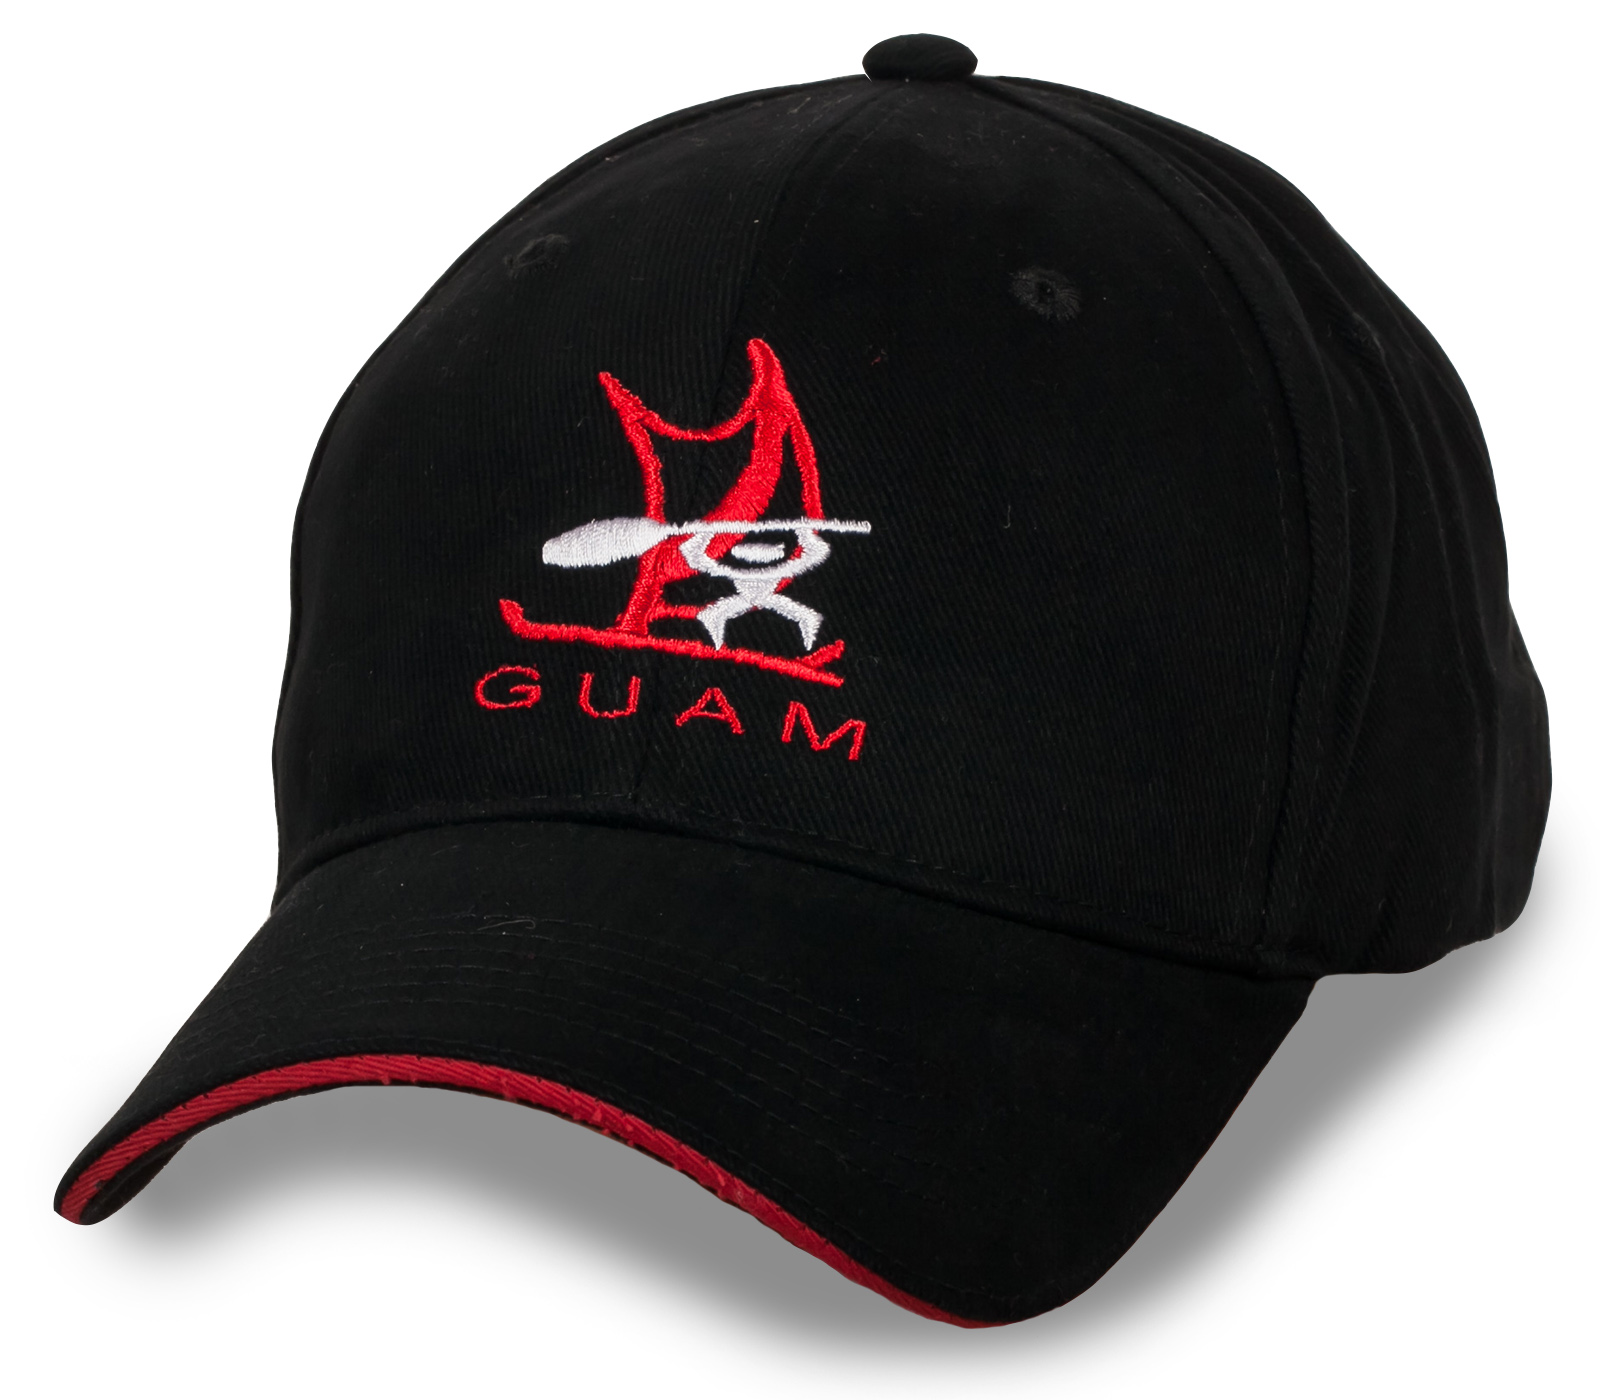 Купить строгую черную бейсболку Guam с удобной доставкой